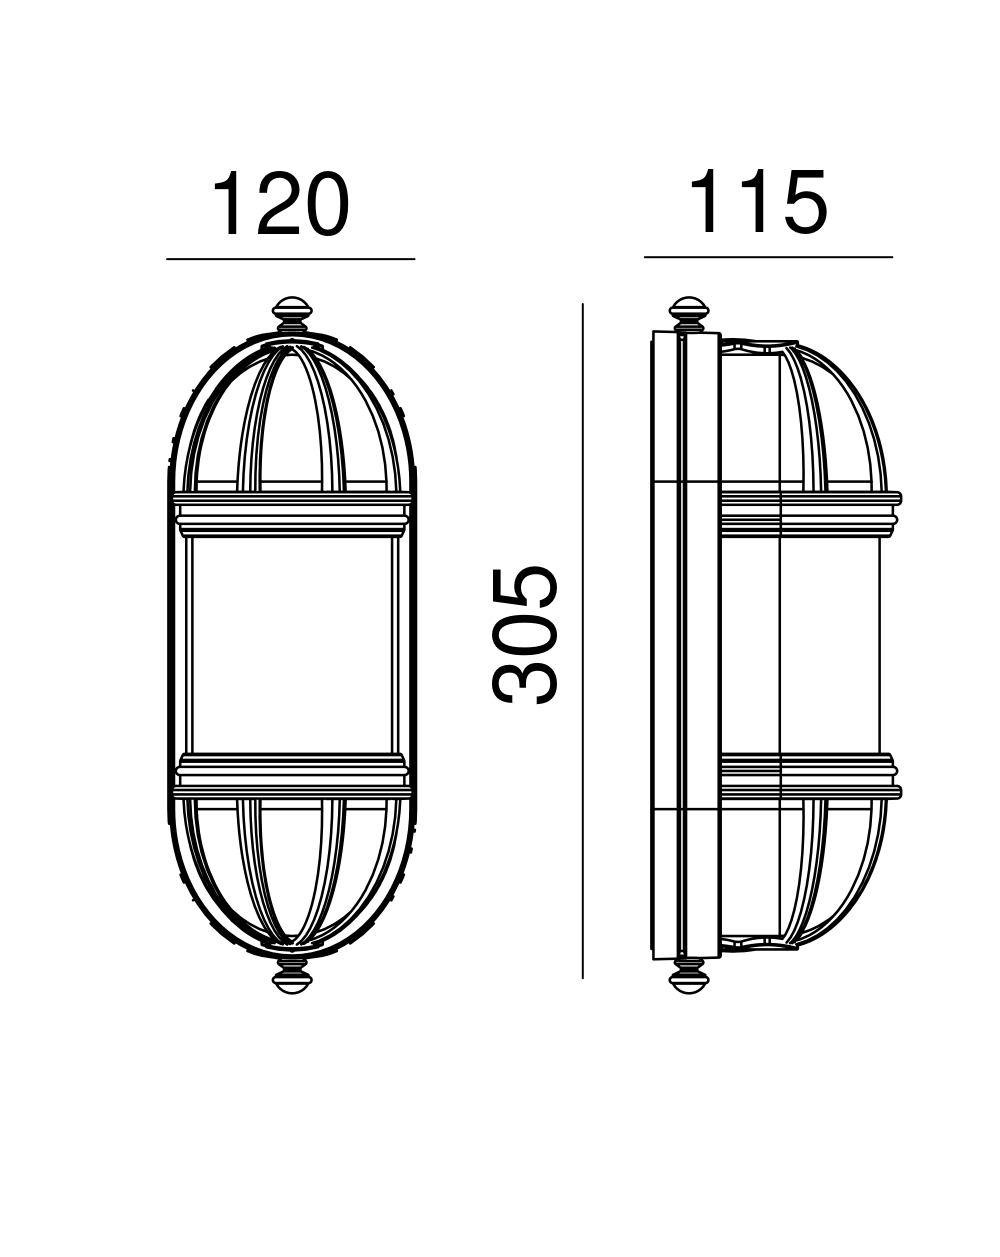 Lampa ścienna / kinkiet Torino - Norlys oprawa zewnętrzna czarna lub biała